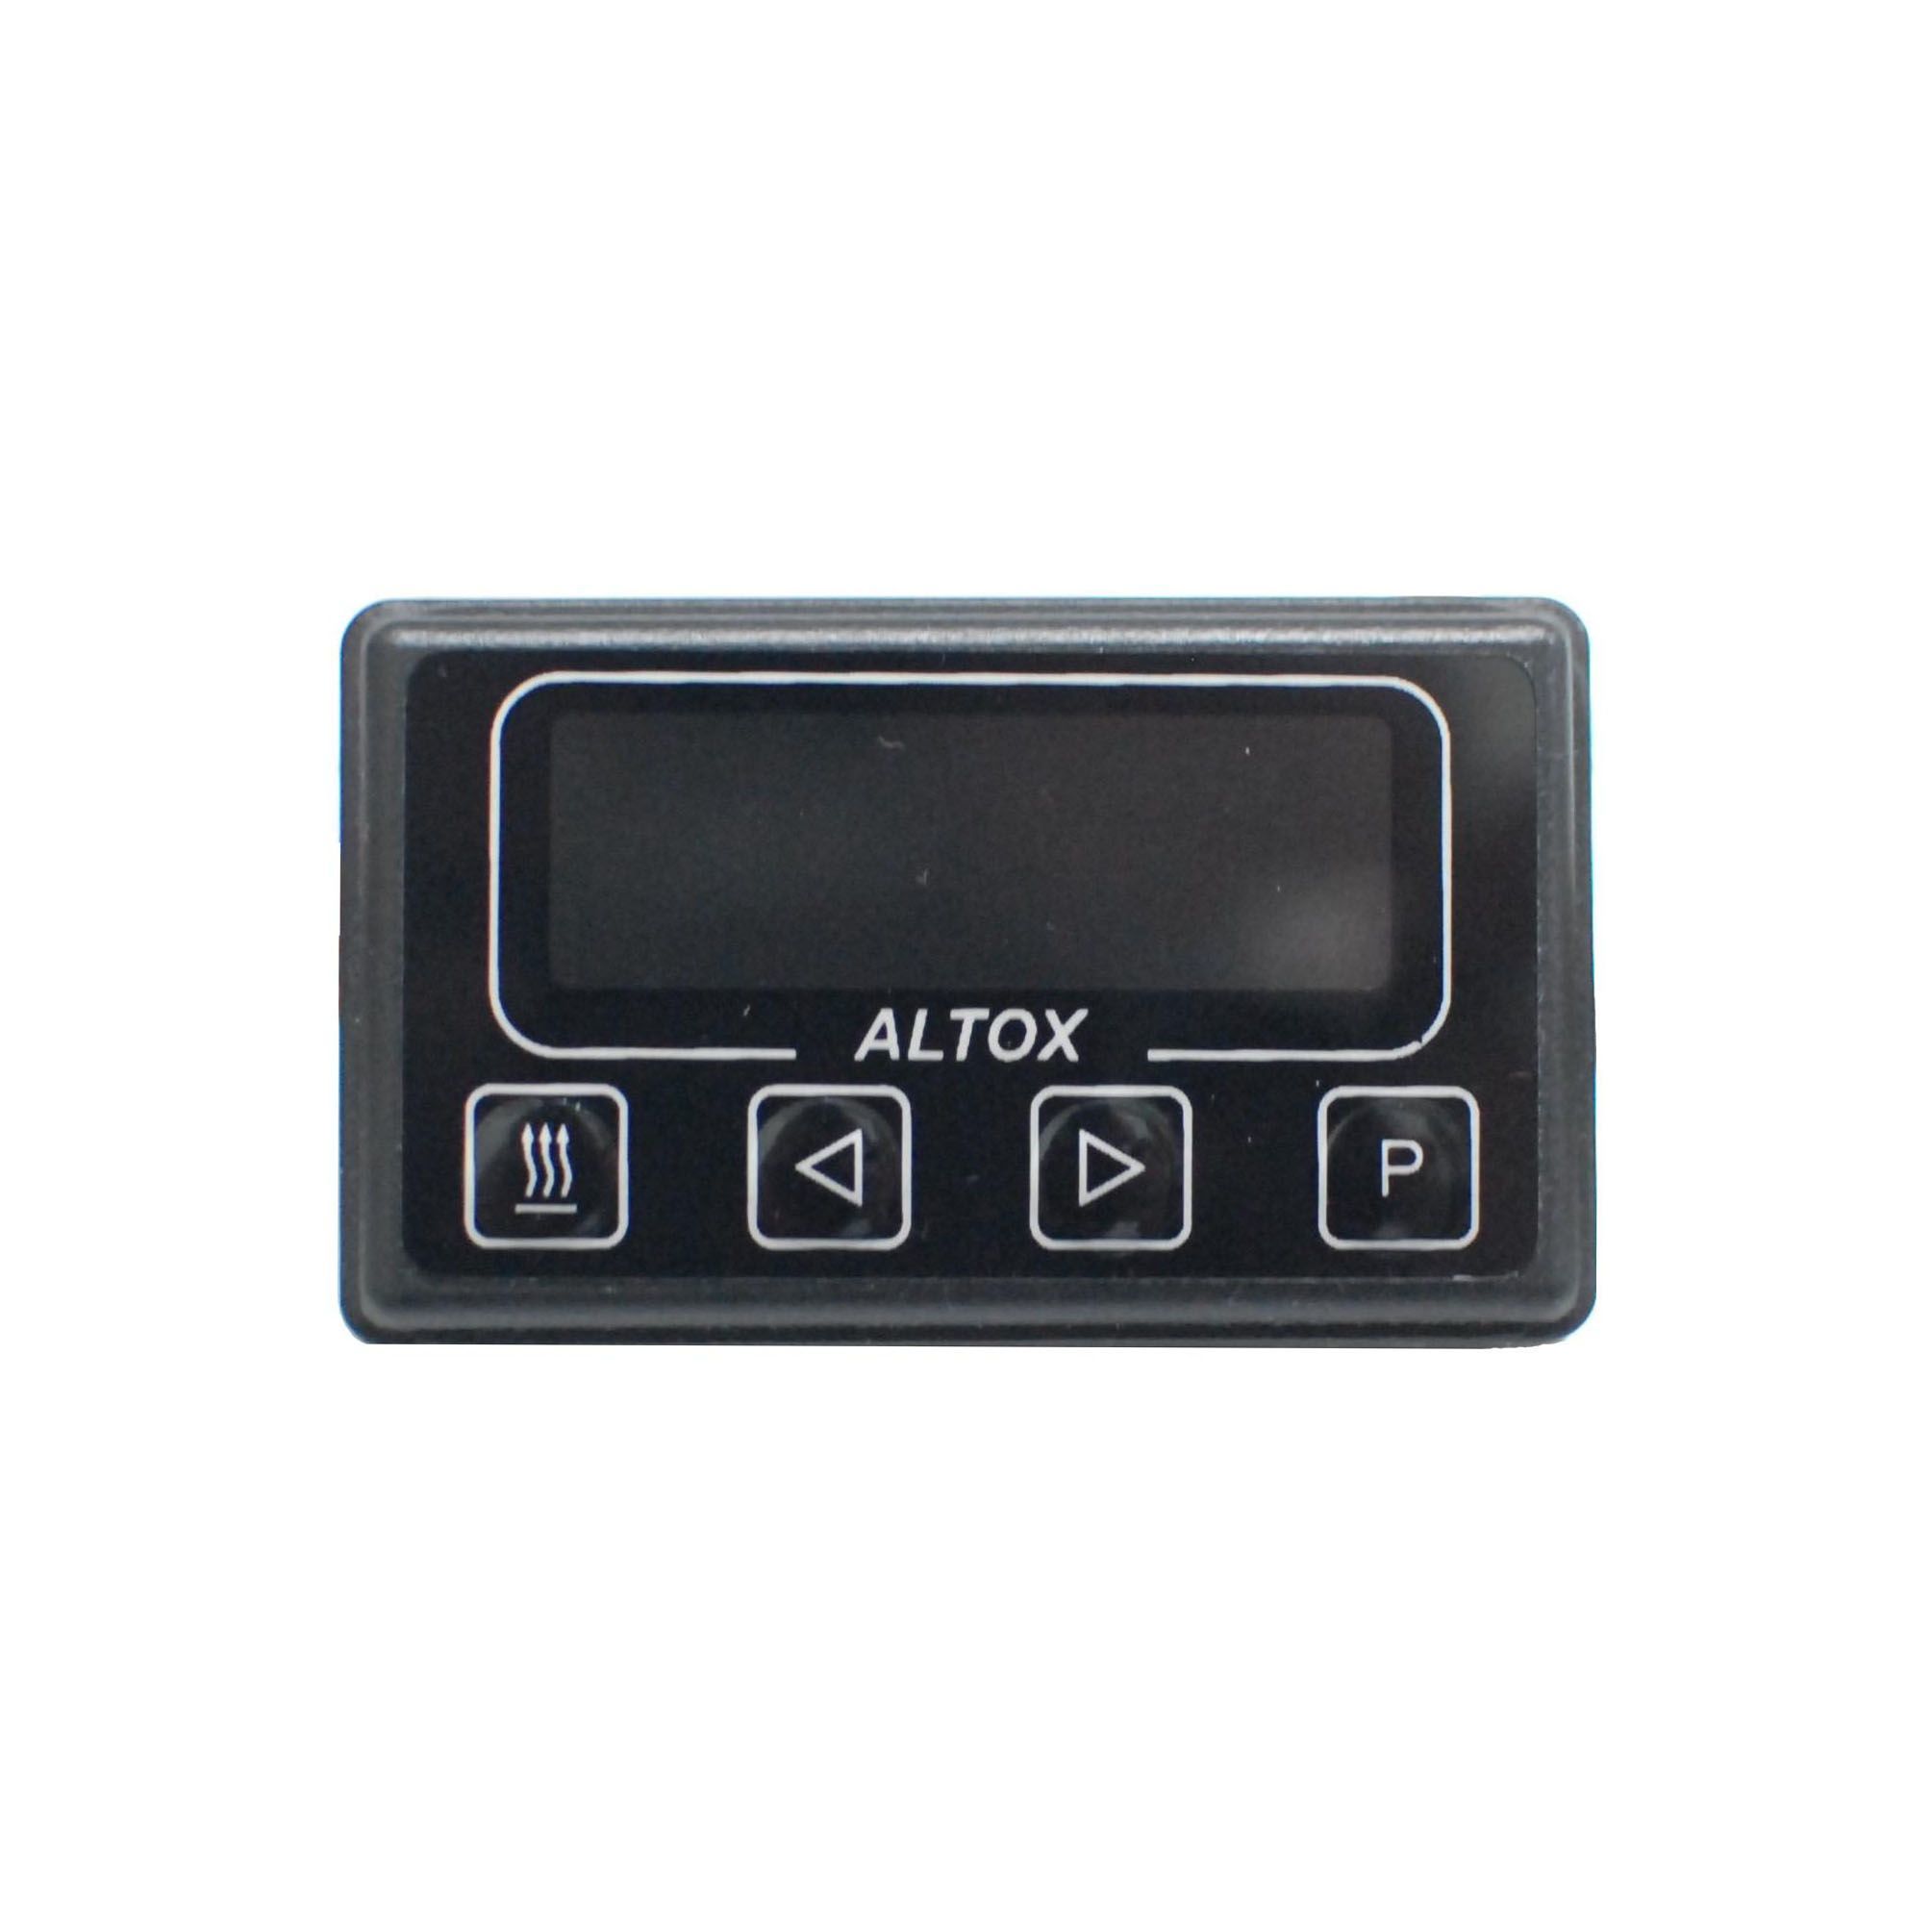 Таймер webasto. Таймер для Webasto ALTOX. ALTOX пульт управления вебасто. ALTOX timer-2. Минитаймер Webasto.